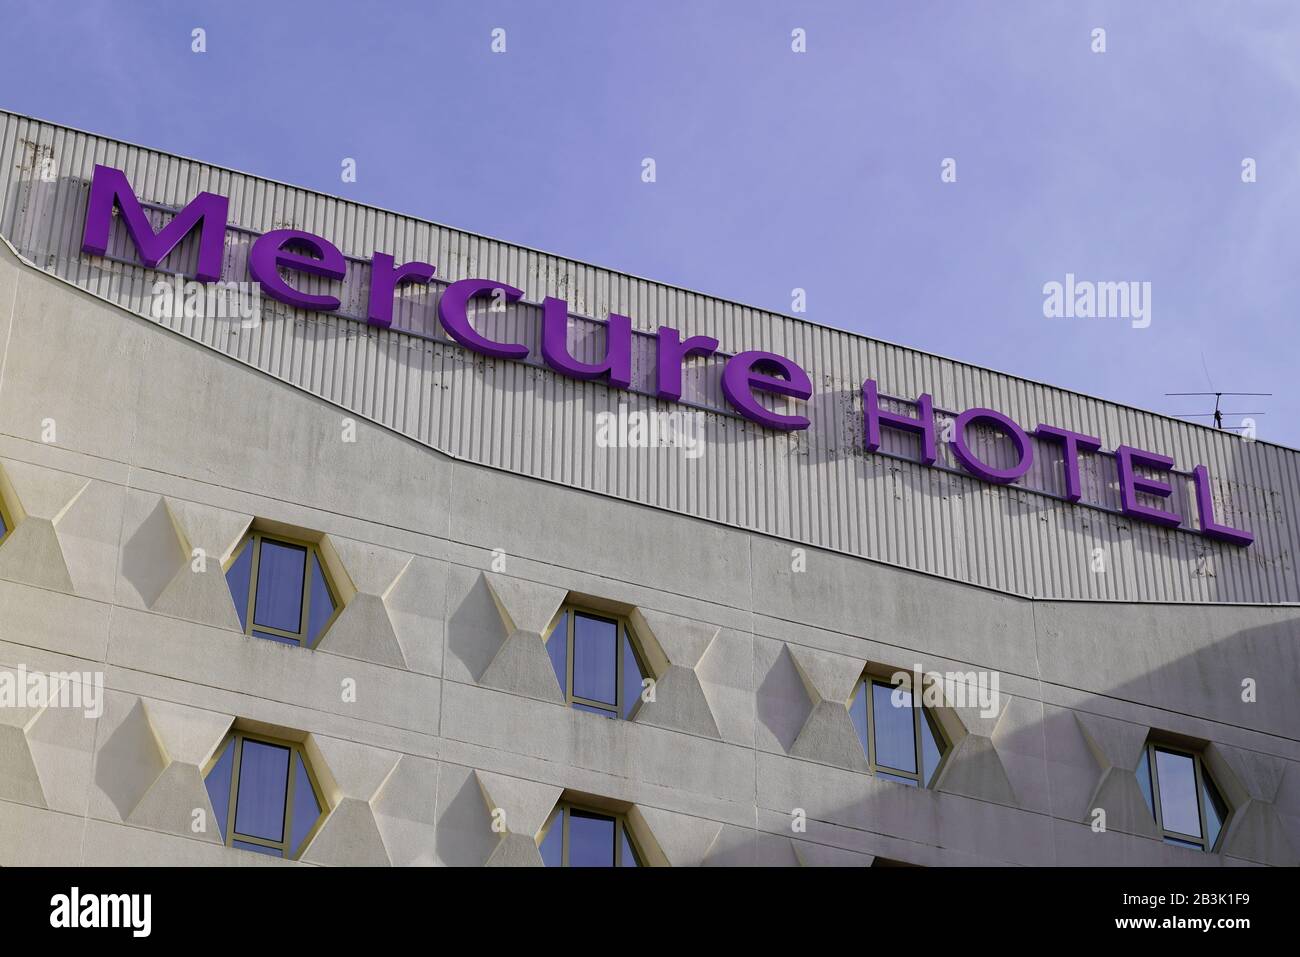 Bordeaux , Aquitaine / France - 11 19 2019 : l'hotel mercure firma il logo sulla facciata dell'edificio Foto Stock